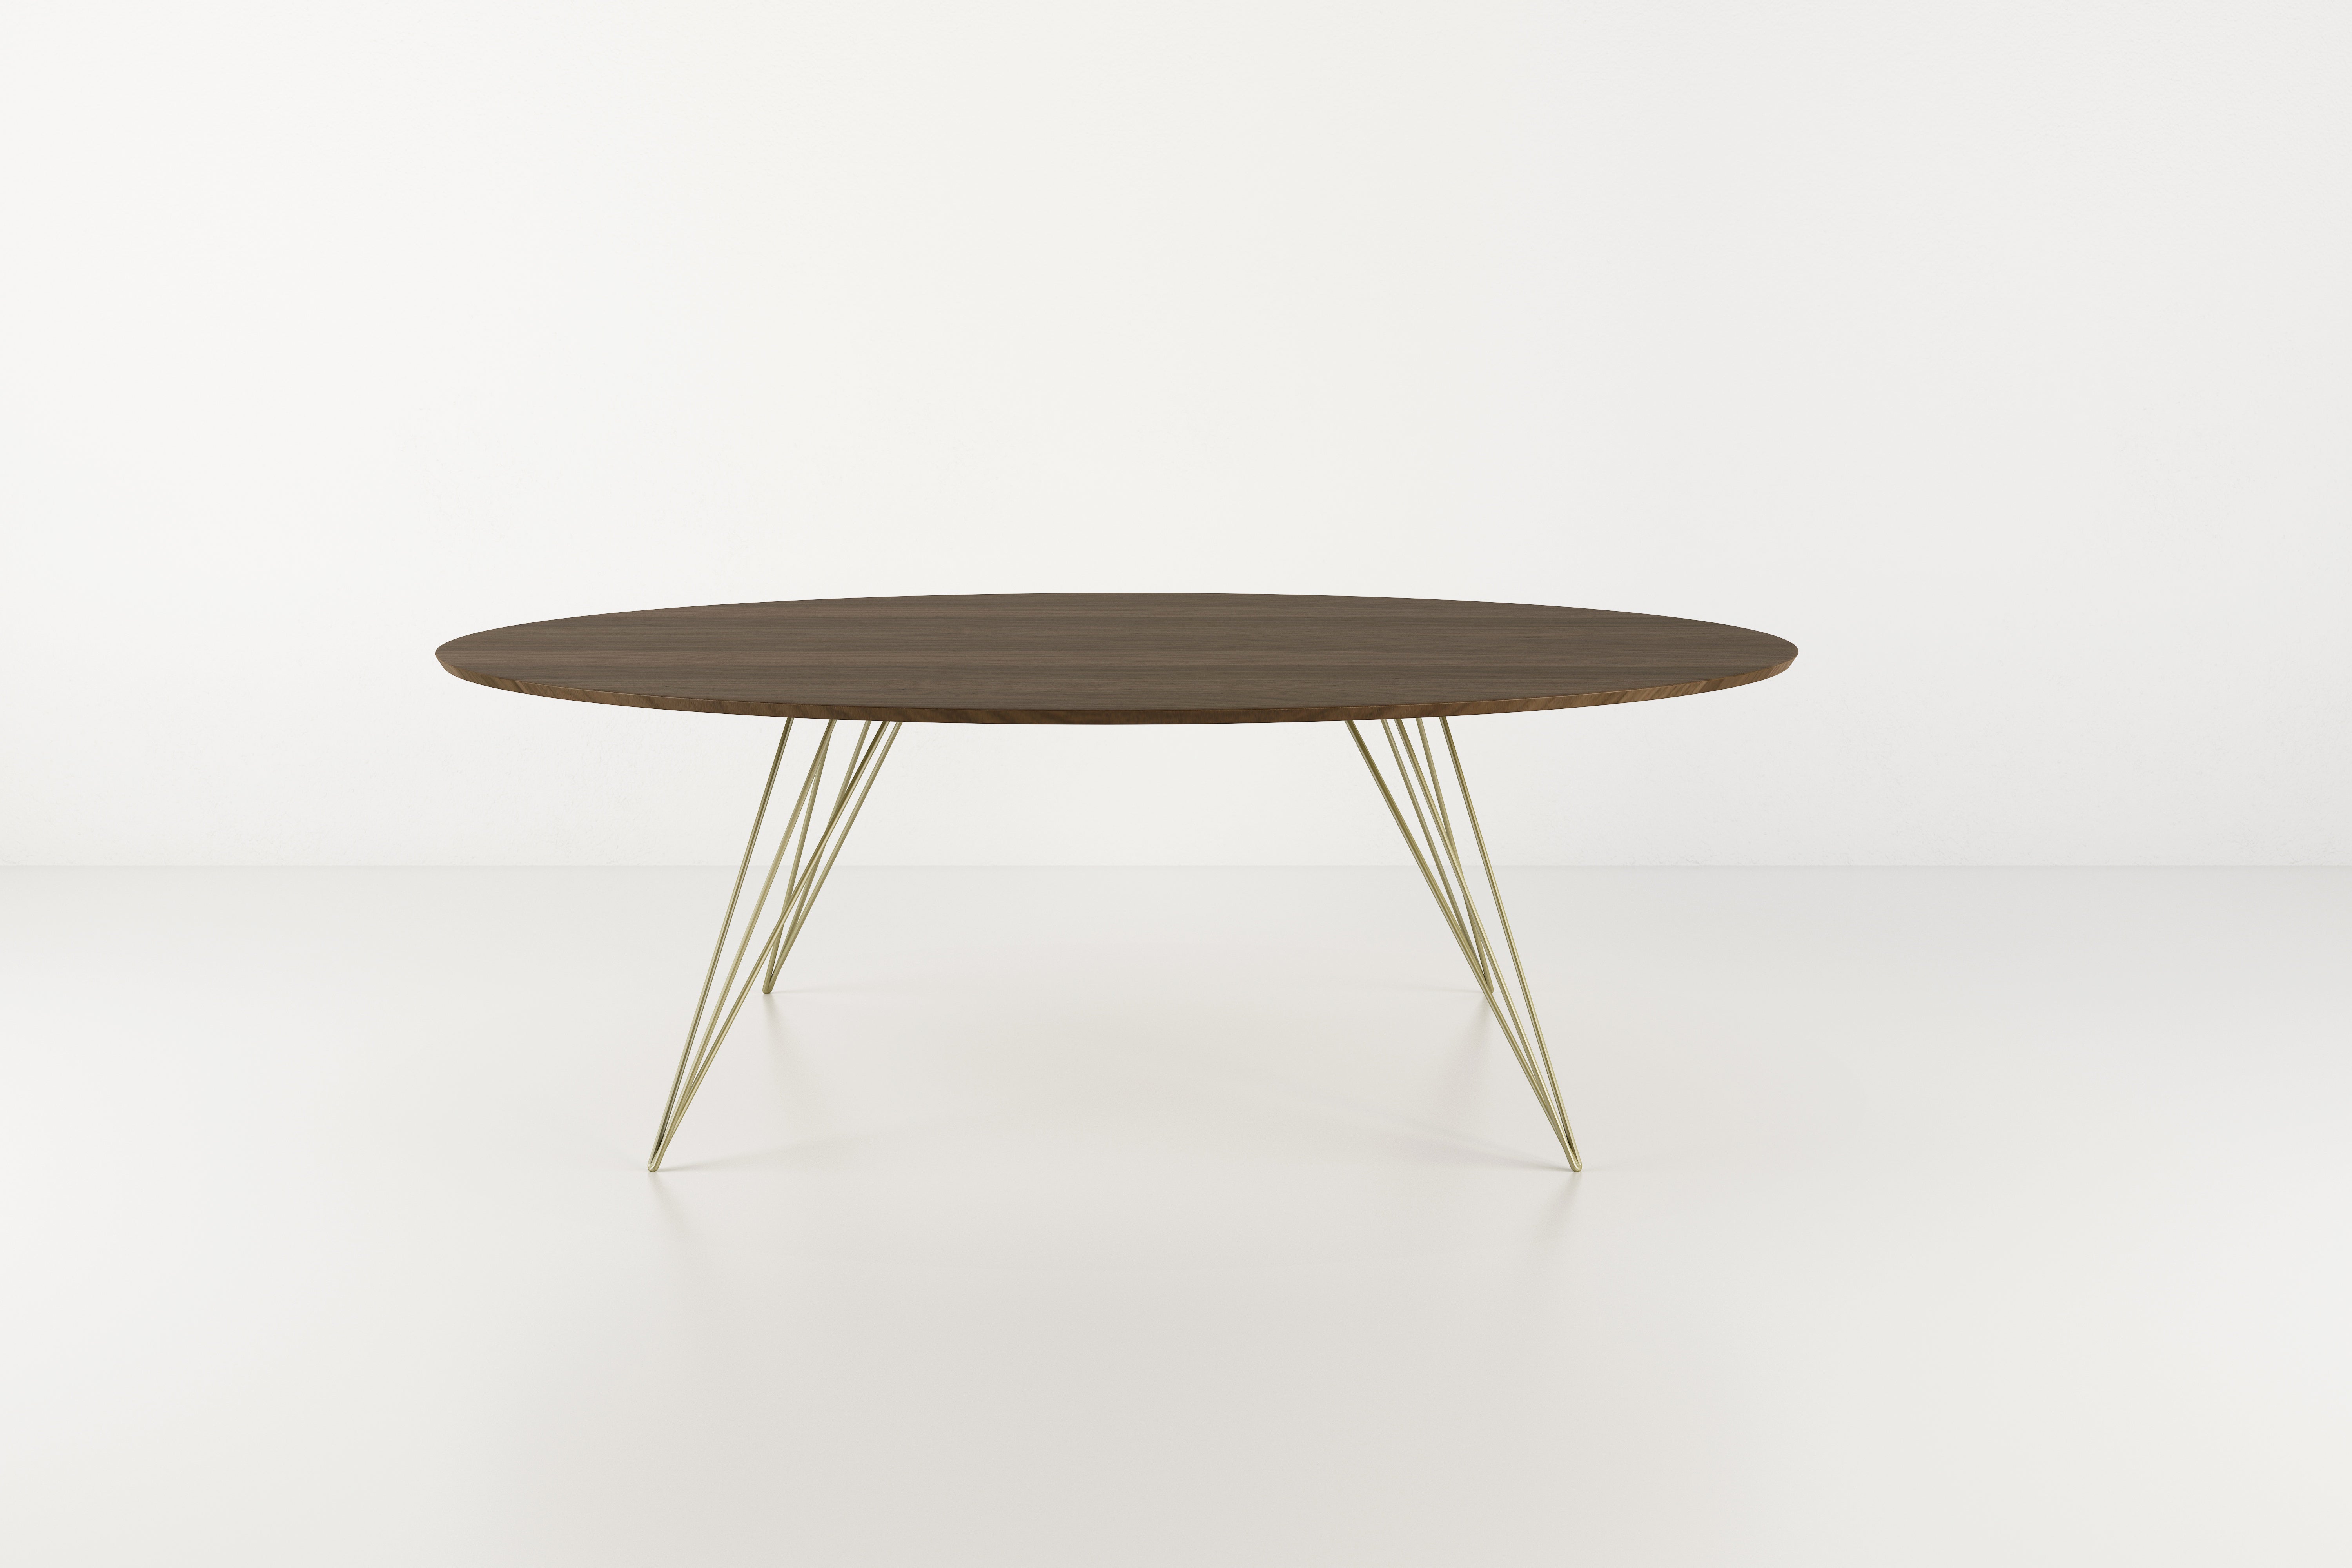 Ein schlanker, eleganter und leichter Tisch, der in Form, Größe und Farbe individuell gestaltet werden kann. Dieses handgefertigte Möbelstück kombiniert perfekt industrielle Haarnadelbeine mit einer abgeschrägten Holzplatte. Die unregelmäßige